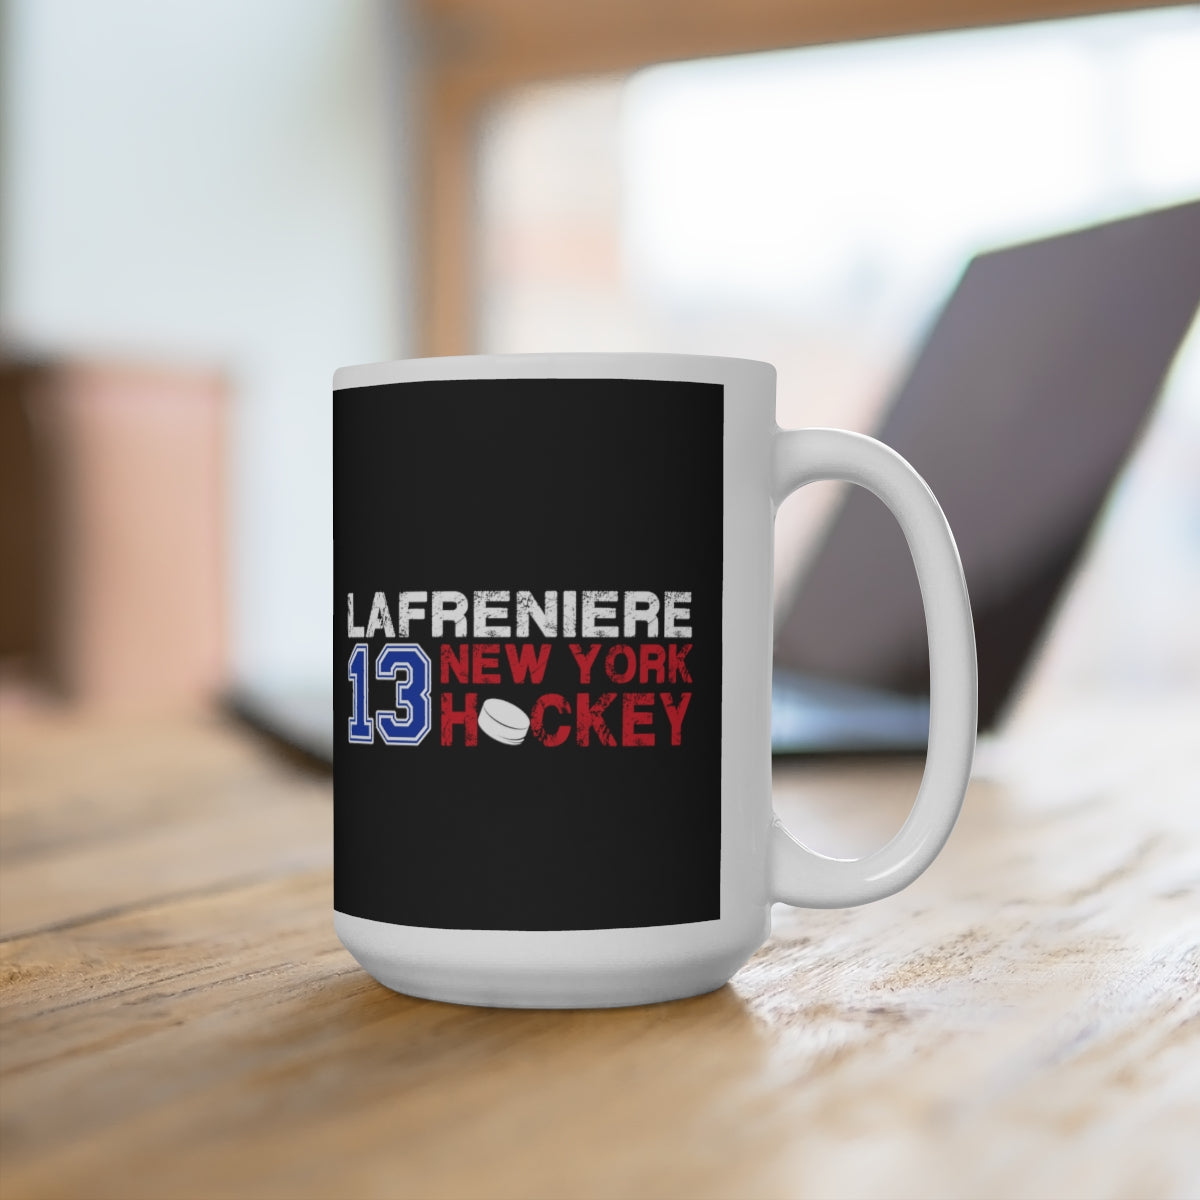 Lafreniere 13 New York Hockey Ceramic Coffee Mug In Black, 15oz